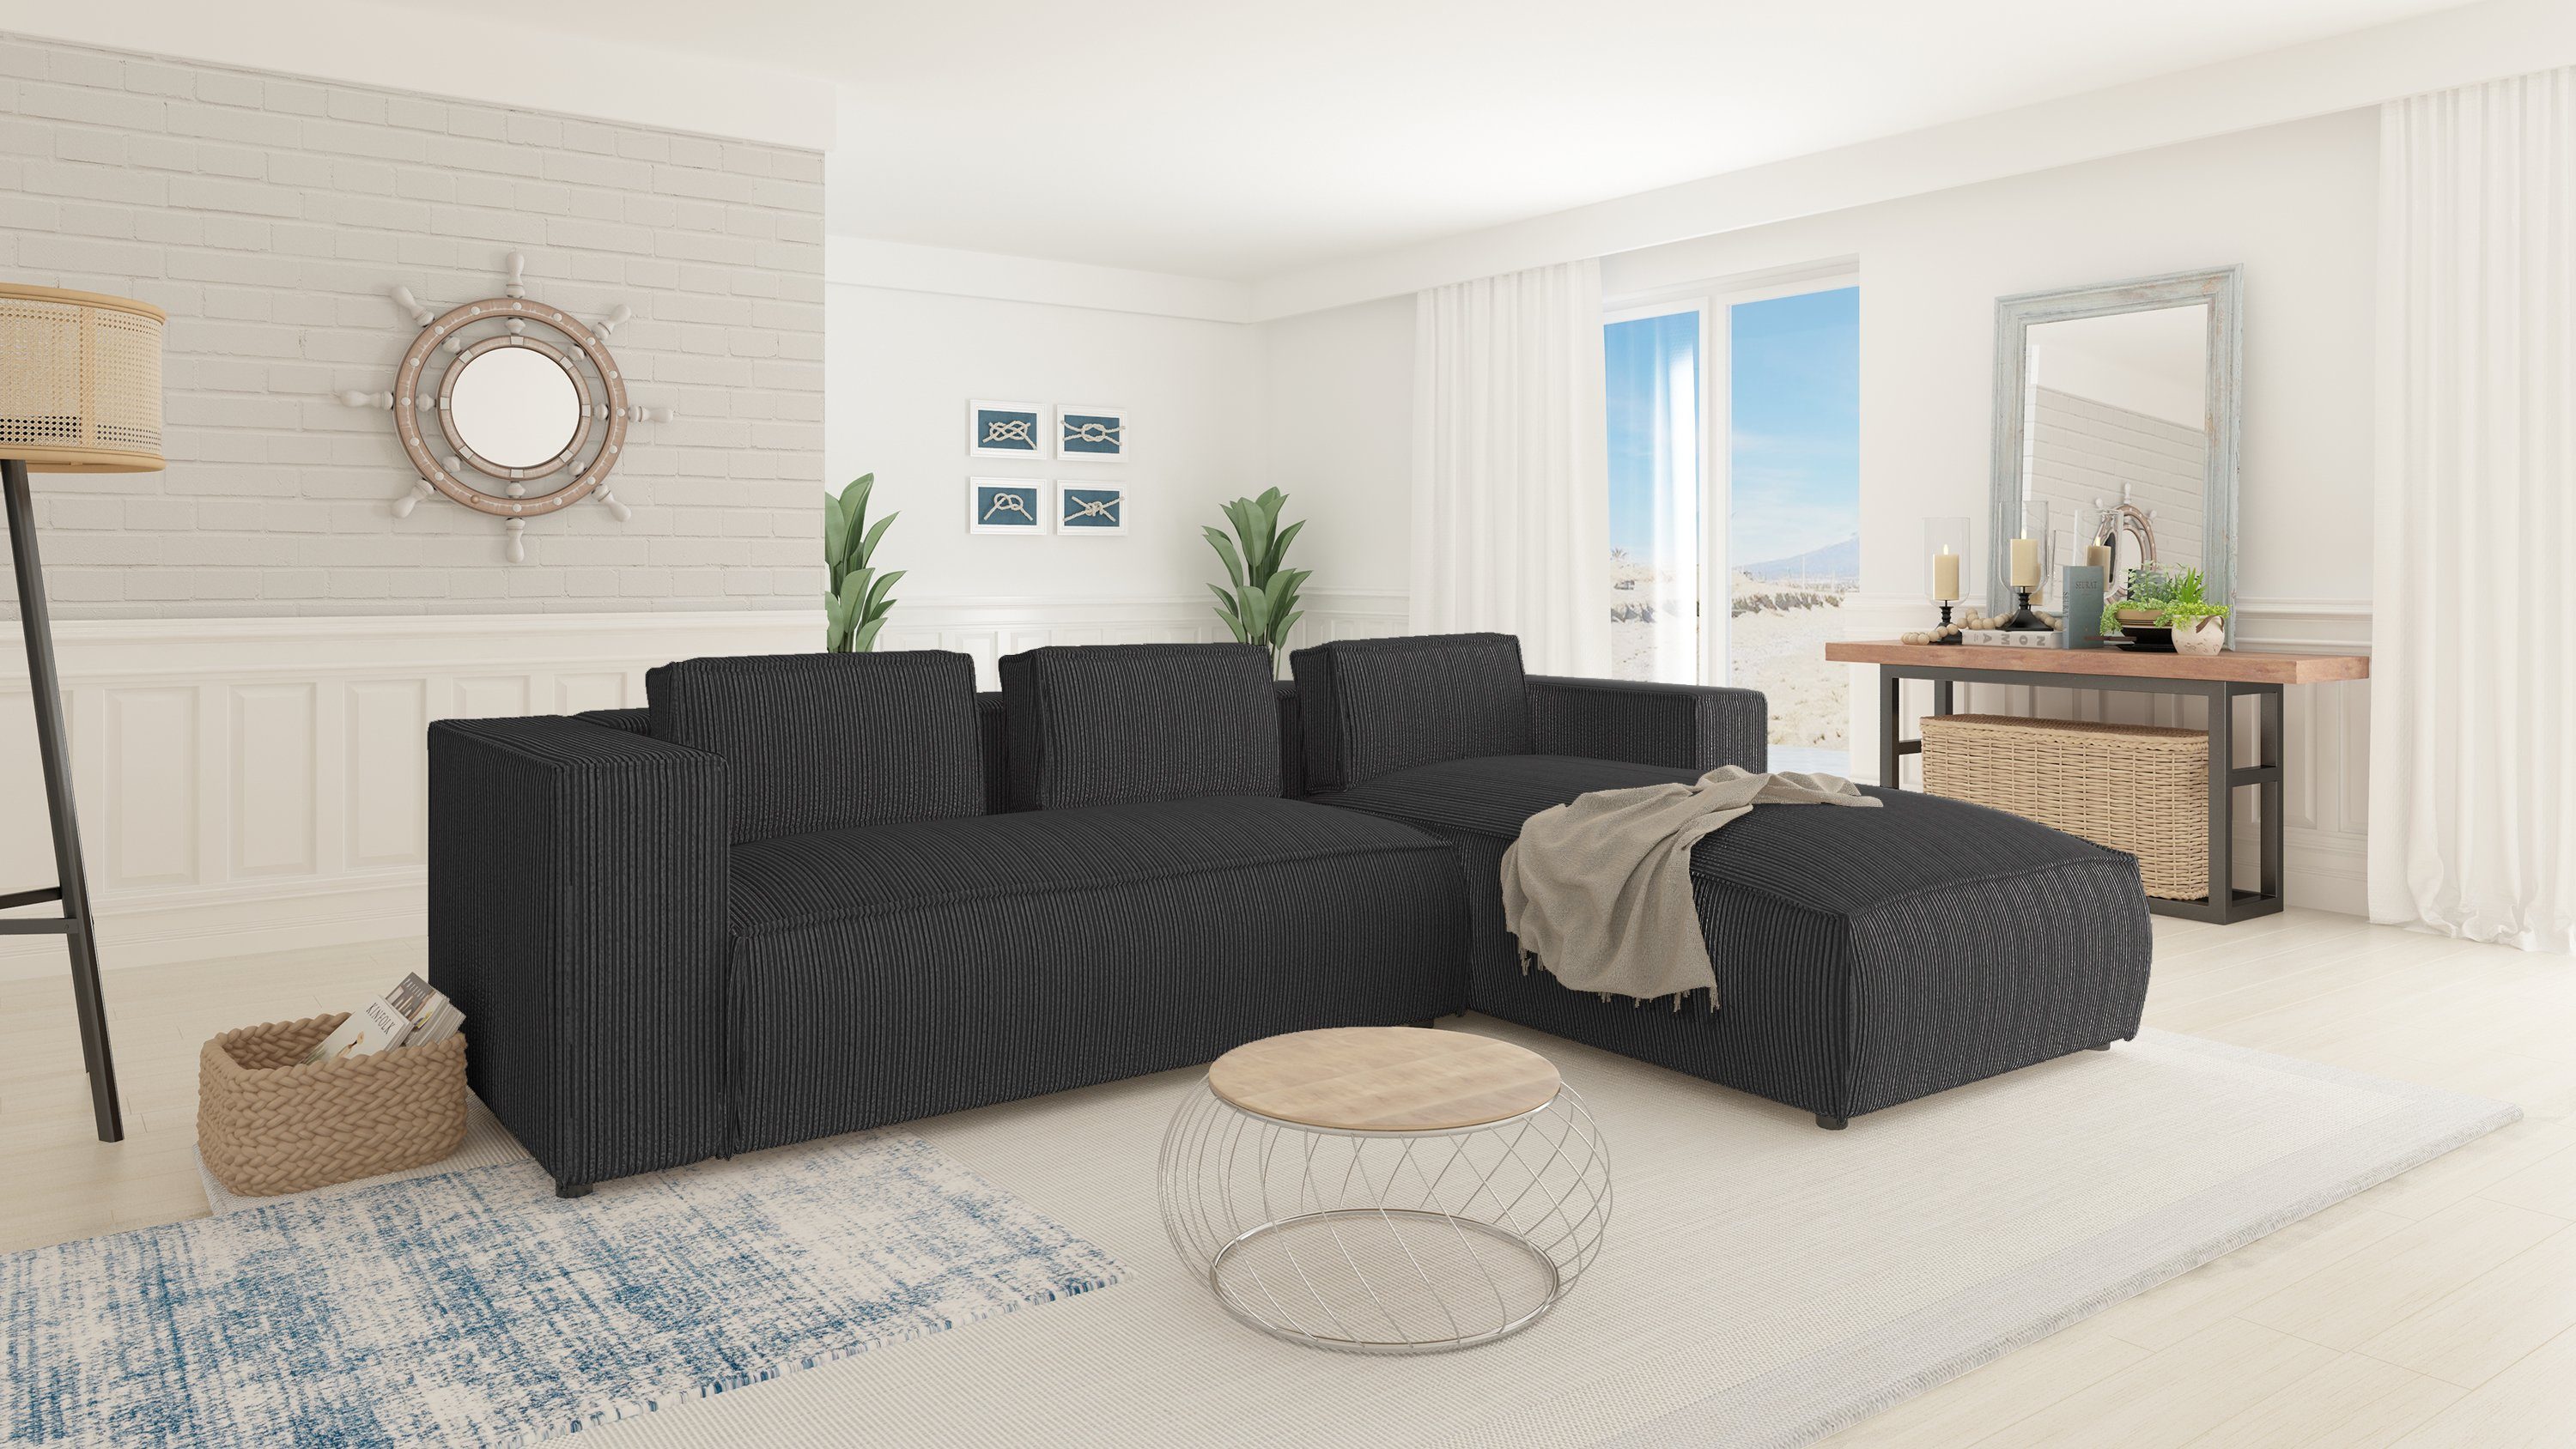 Ecksofa bestellbar in Möbel Wellenfederung Teile, Optik, links rechts Grau oder S-Style mit Moderner Renne, 2 mane